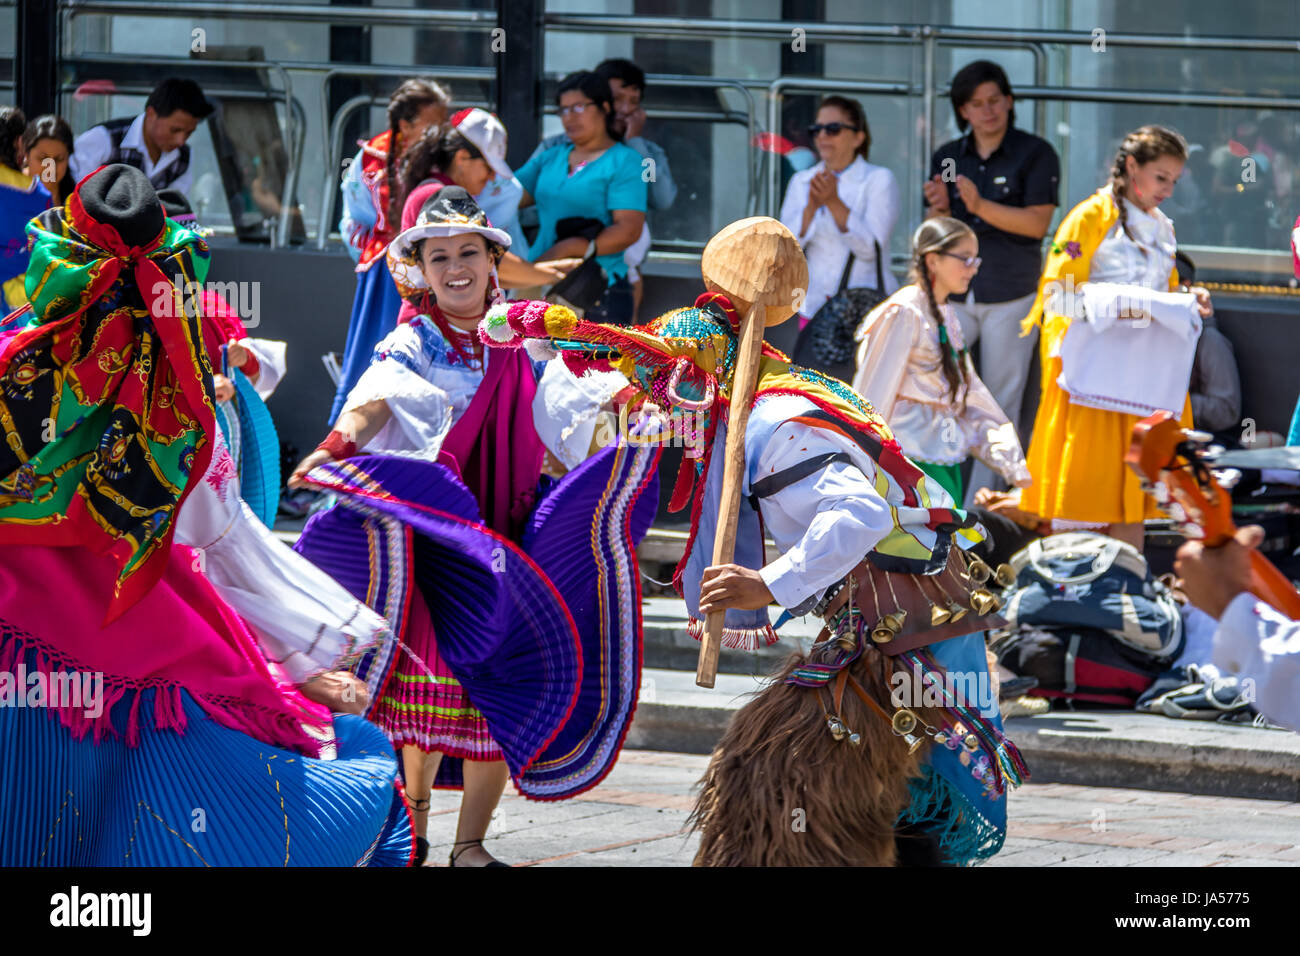 Groupe en costume local effectuant la danse traditionnelle équatorienne - Quito, Équateur Banque D'Images